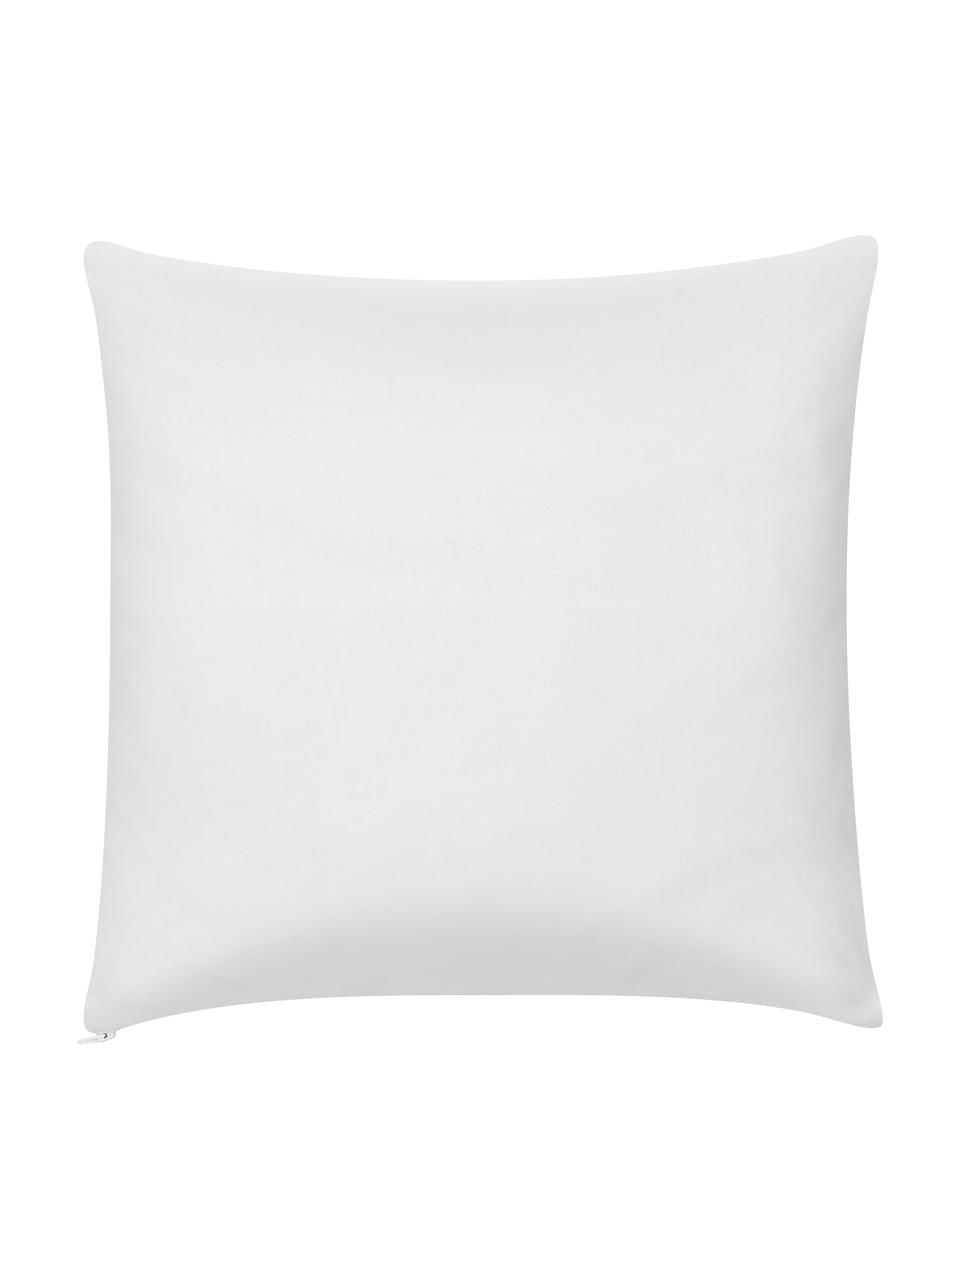 Federa arredo in cotone beige/bianco con motivo grafico Sera, 100% cotone, Bianco, beige, Larg. 45 x Lung. 45 cm